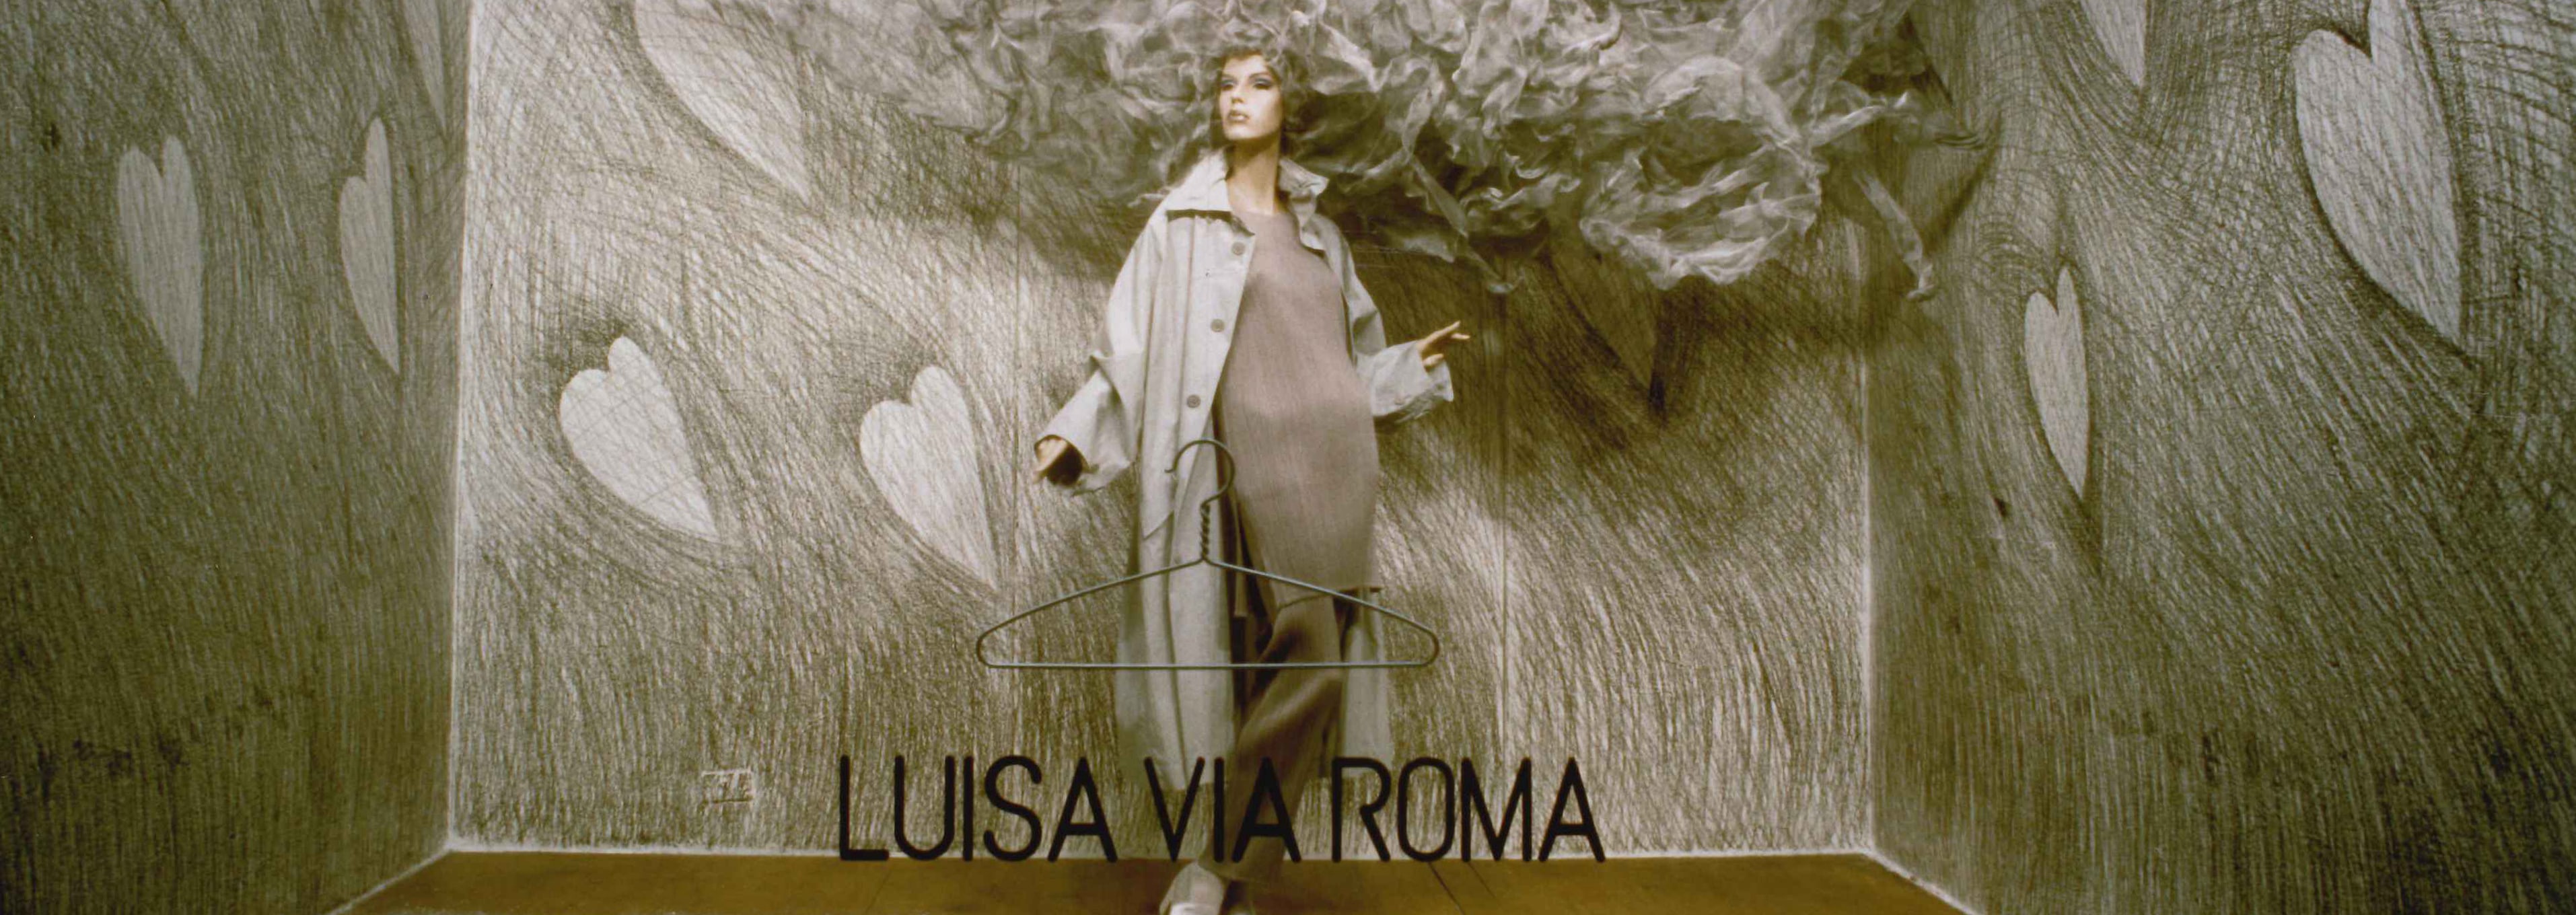 Lorenzo Gemma, el talento detrás de los diseños de escaparate de LuisaViaRoma